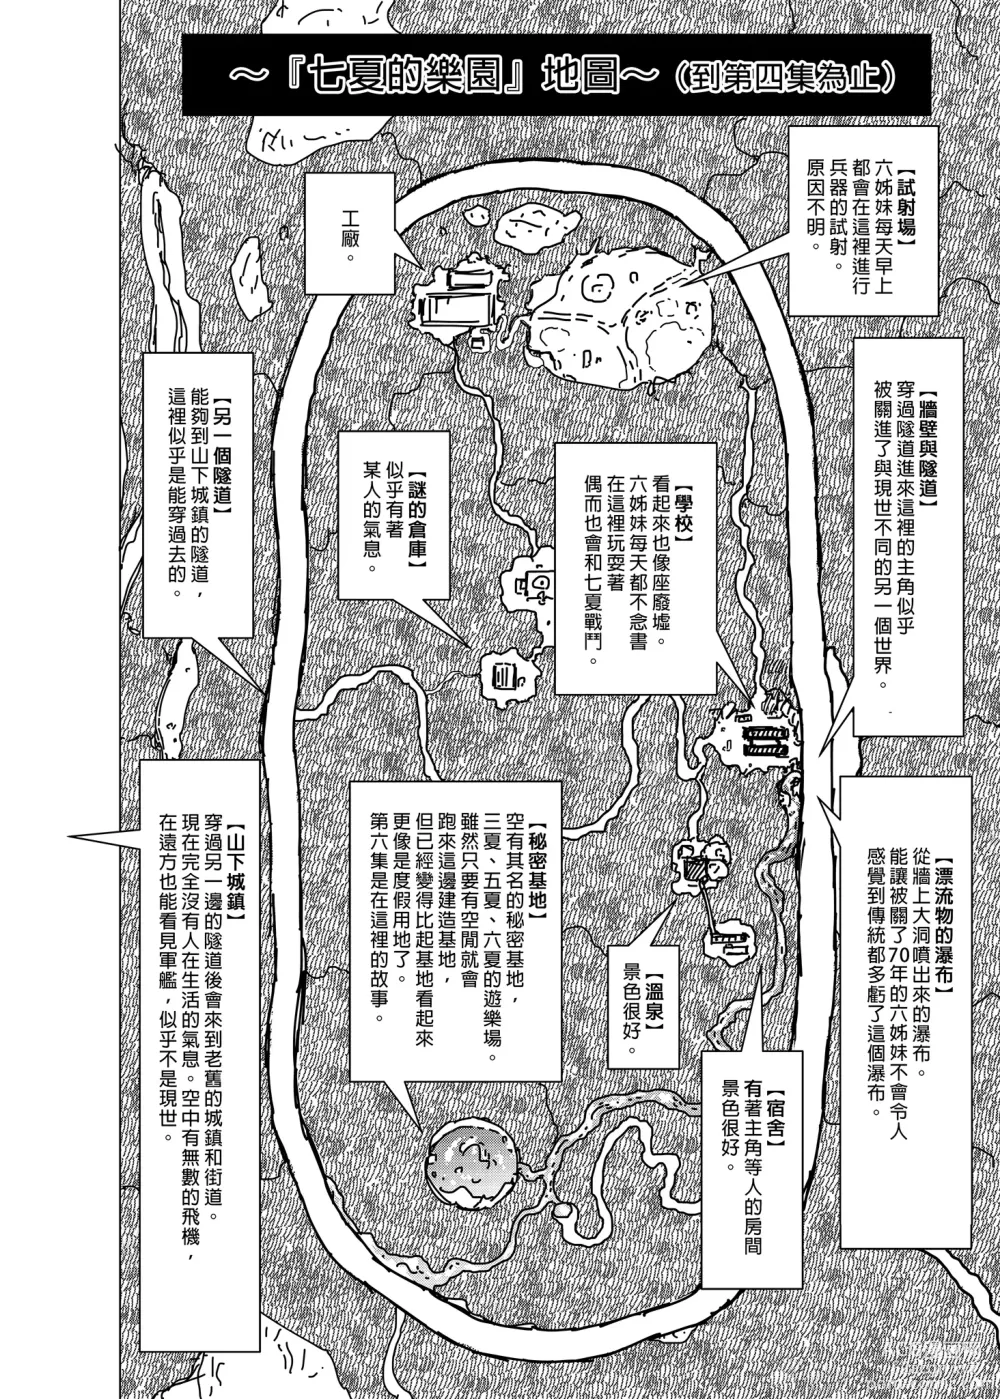 Page 55 of manga nanaka no rakuen4